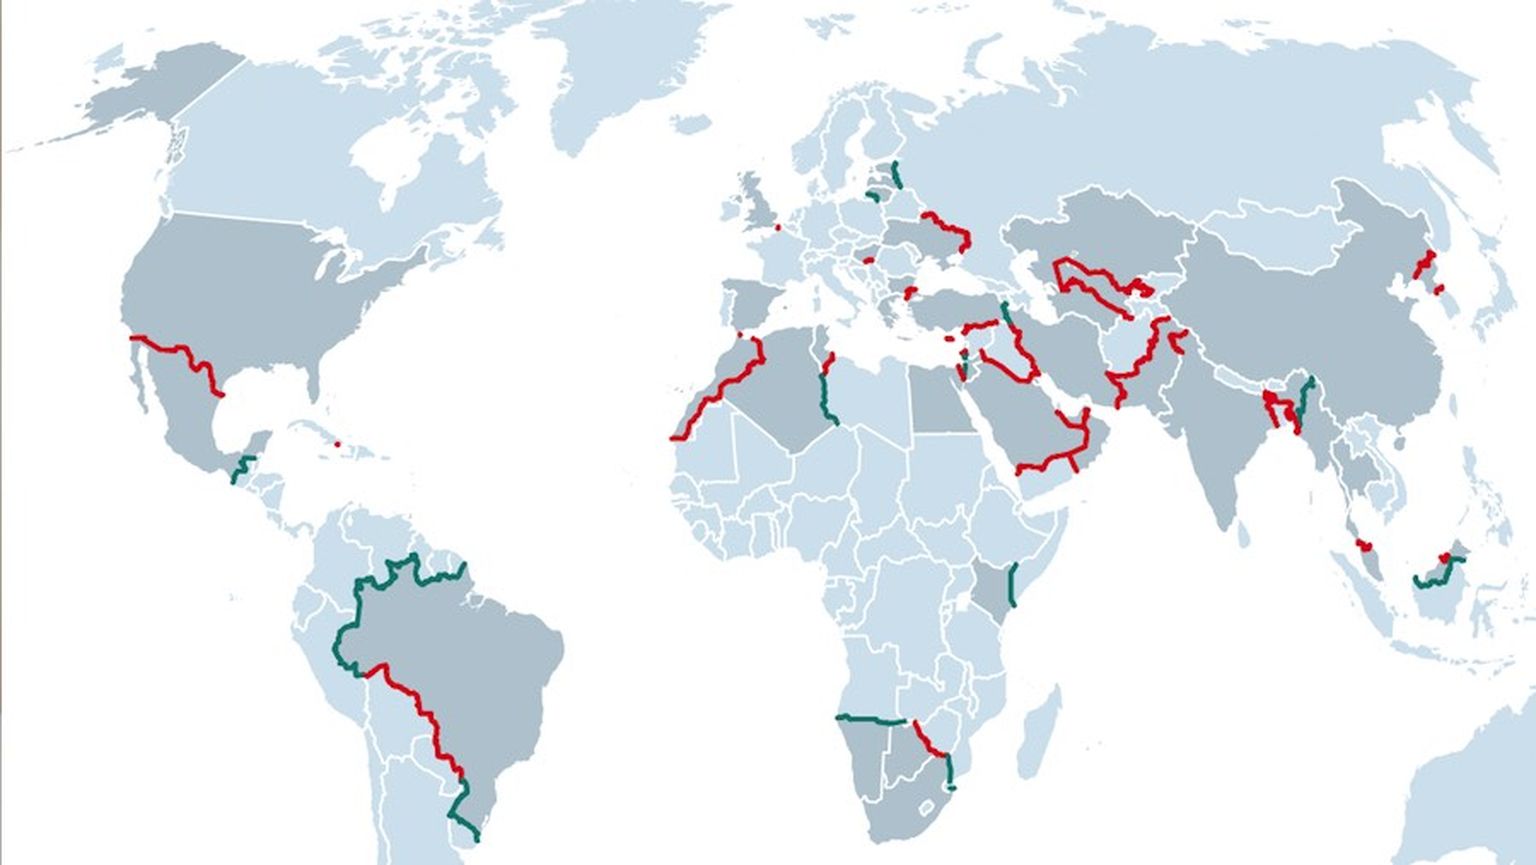 SELLE KAARDI koostas neli aastat tagasi Briti nädalakiri The Economist. Kaardil on punasega tähistatud riigipiirid maailmas, kus juba toona olid olemas või projekteeritud müürid ja tarad. Rohelisega on tähistatud alad, kus valitsused kavandasid tugevate piiritõkete rajamist.  2022. aastal on nii punast kui ka rohelist värvi kaardil kindlasti palju rohkem.